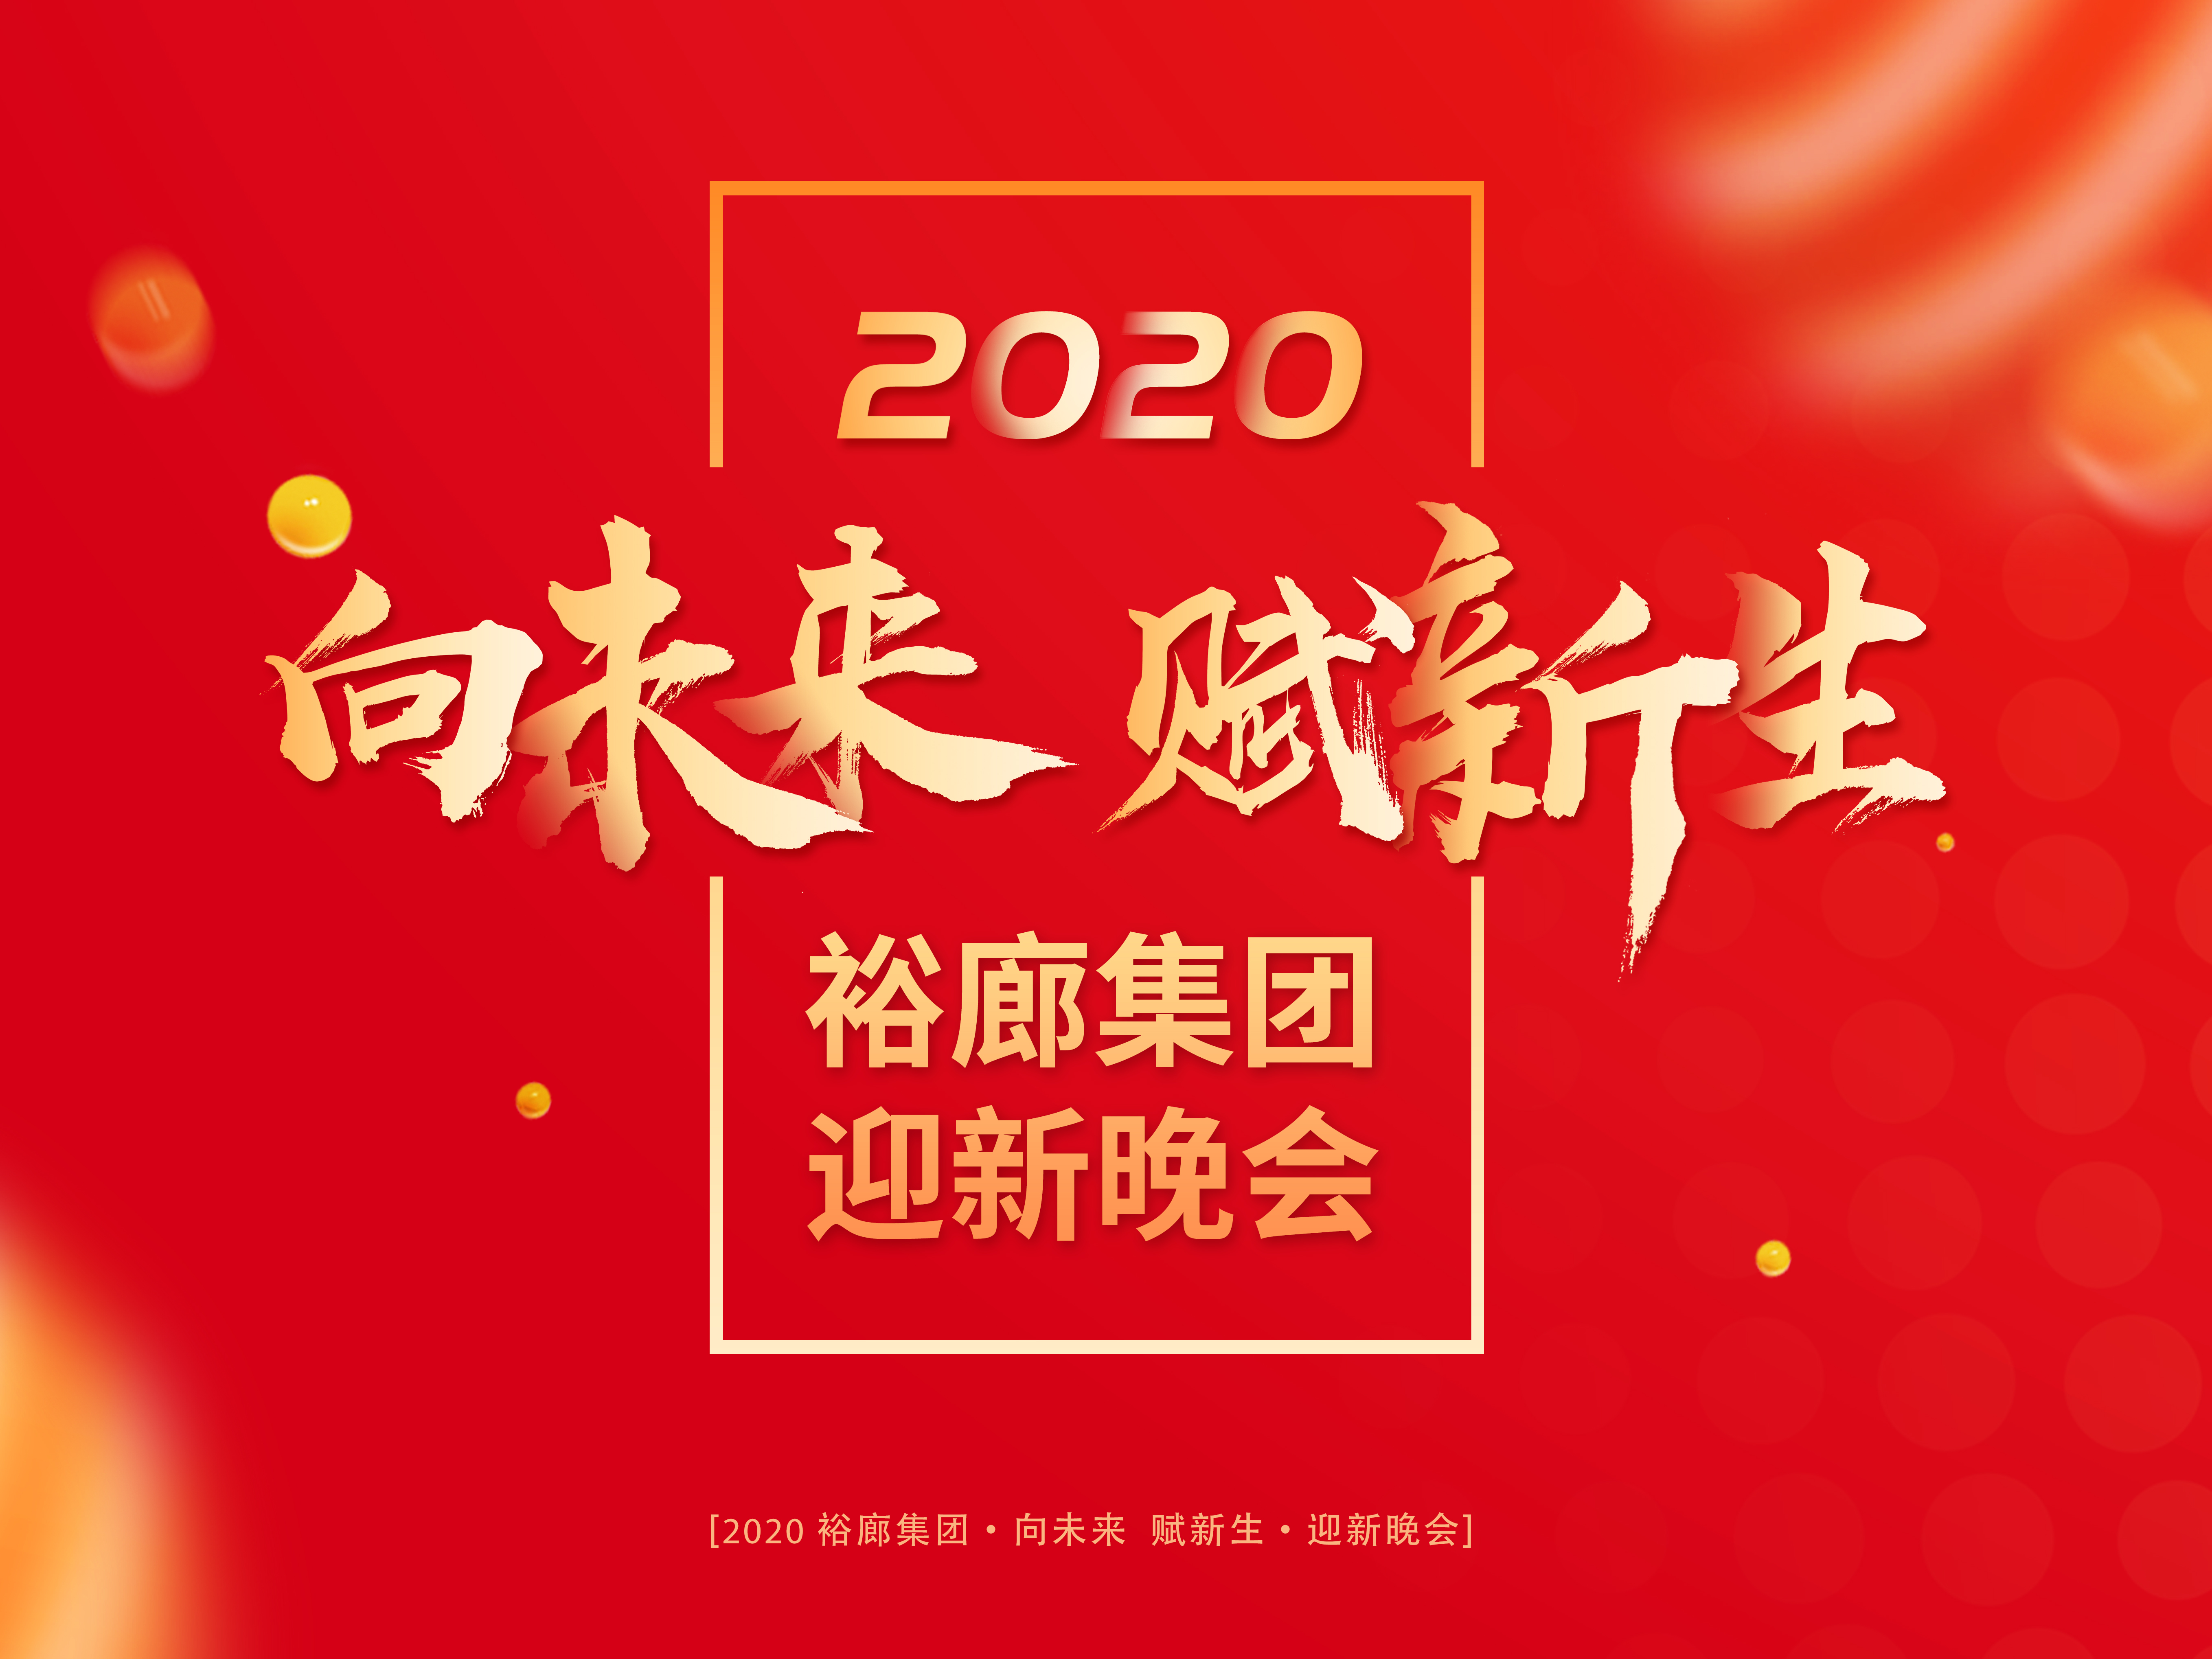 【裕廊集團】向未來 · 賦新生 —— 裕廊集團2020迎新年會圓滿落幕！